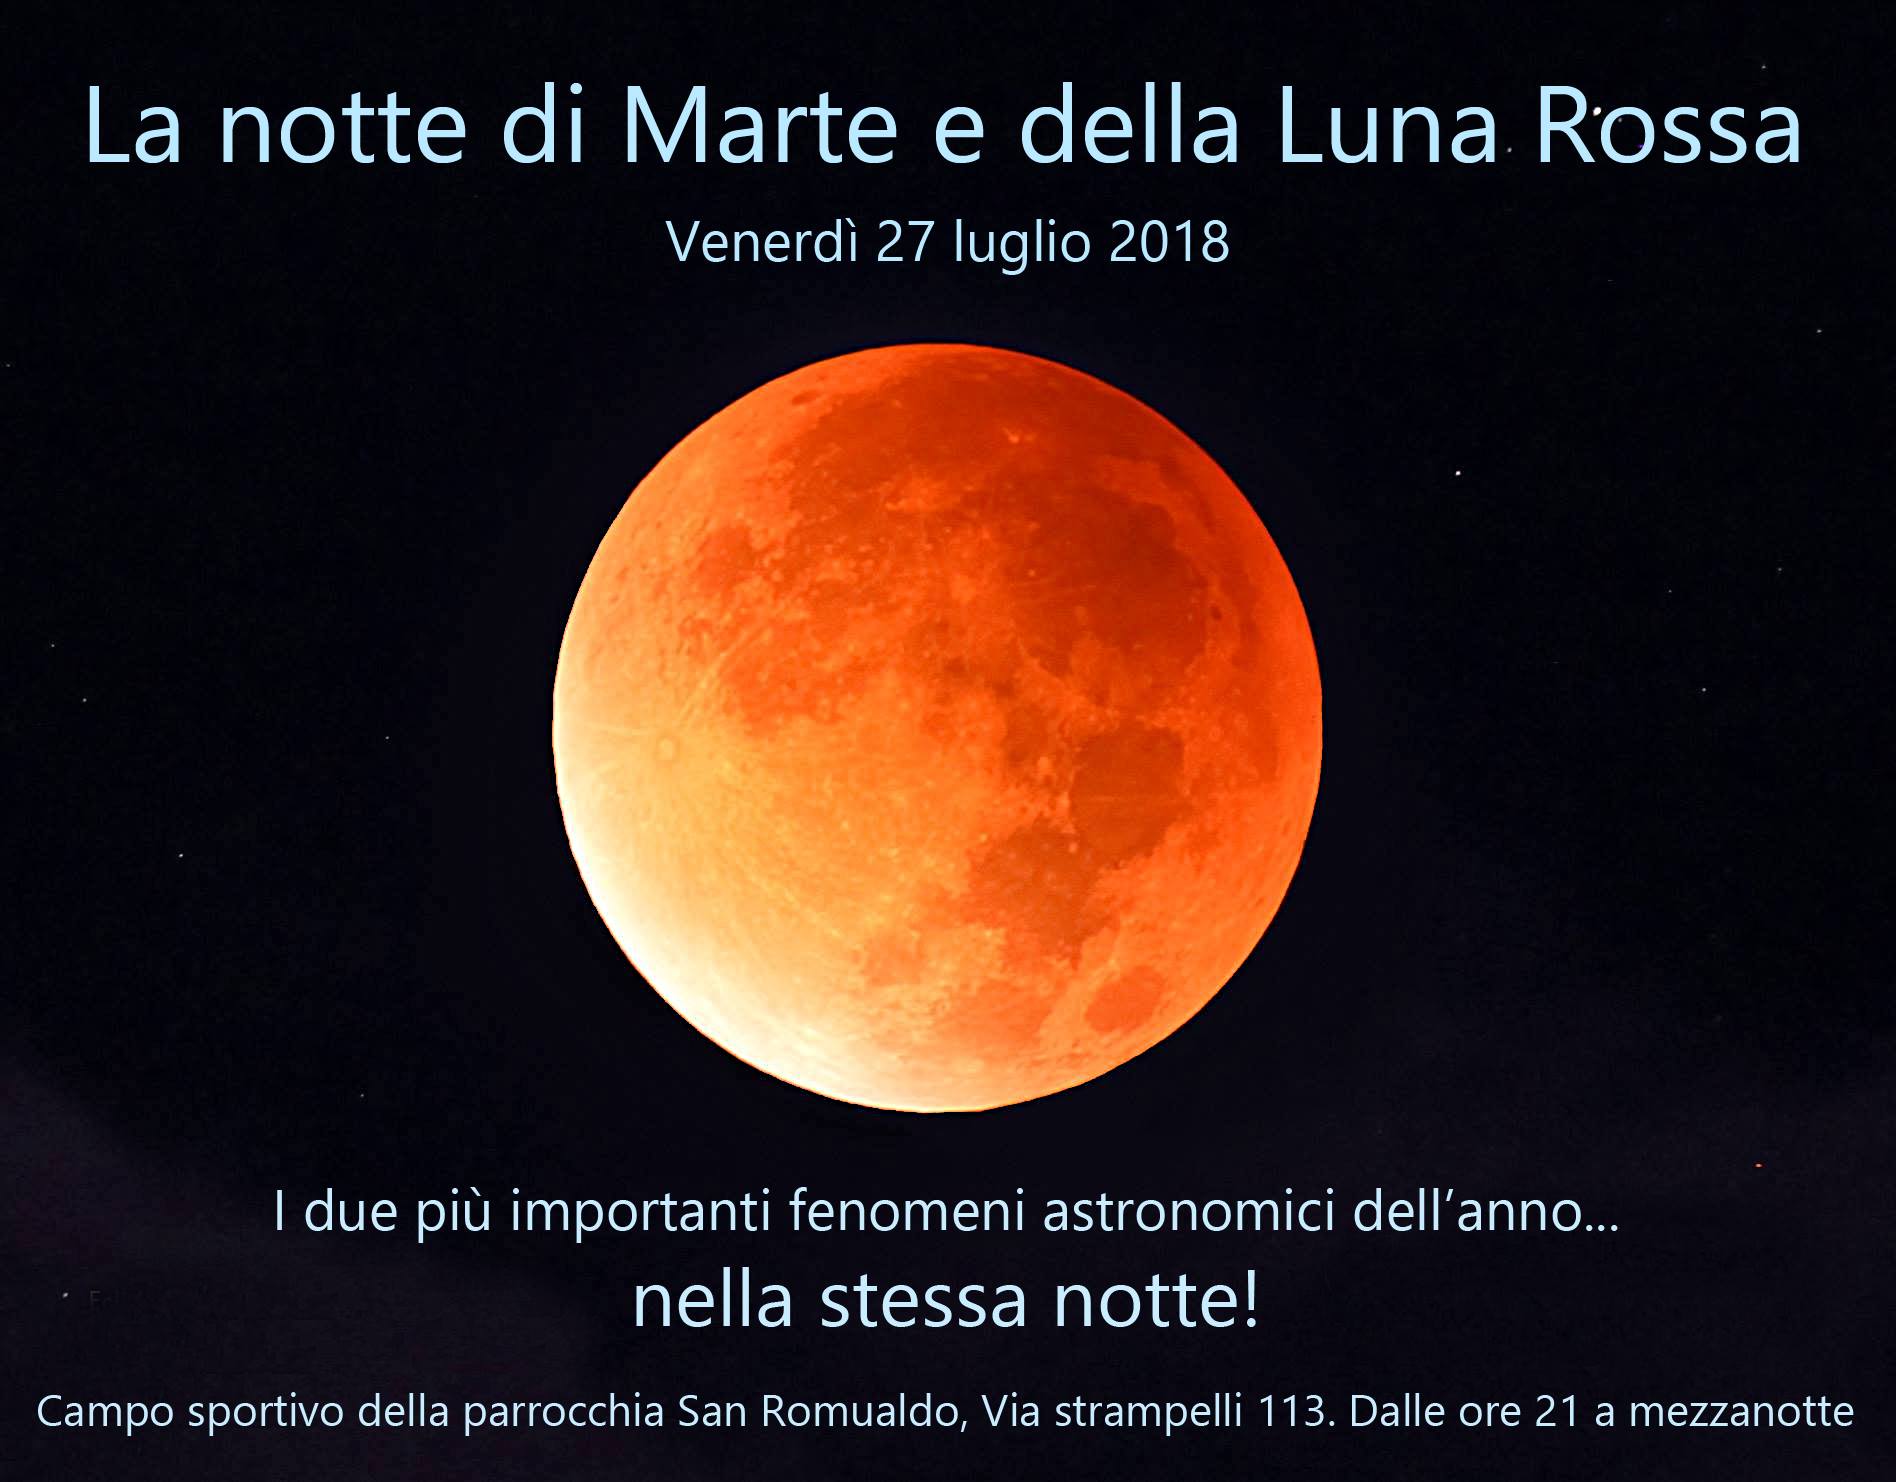 Il prossimo appuntamento con le stelle è da non perdere: venerdì 27 luglio osserveremo l'eclissi totale di Luna e la grande opposizione di Marte!